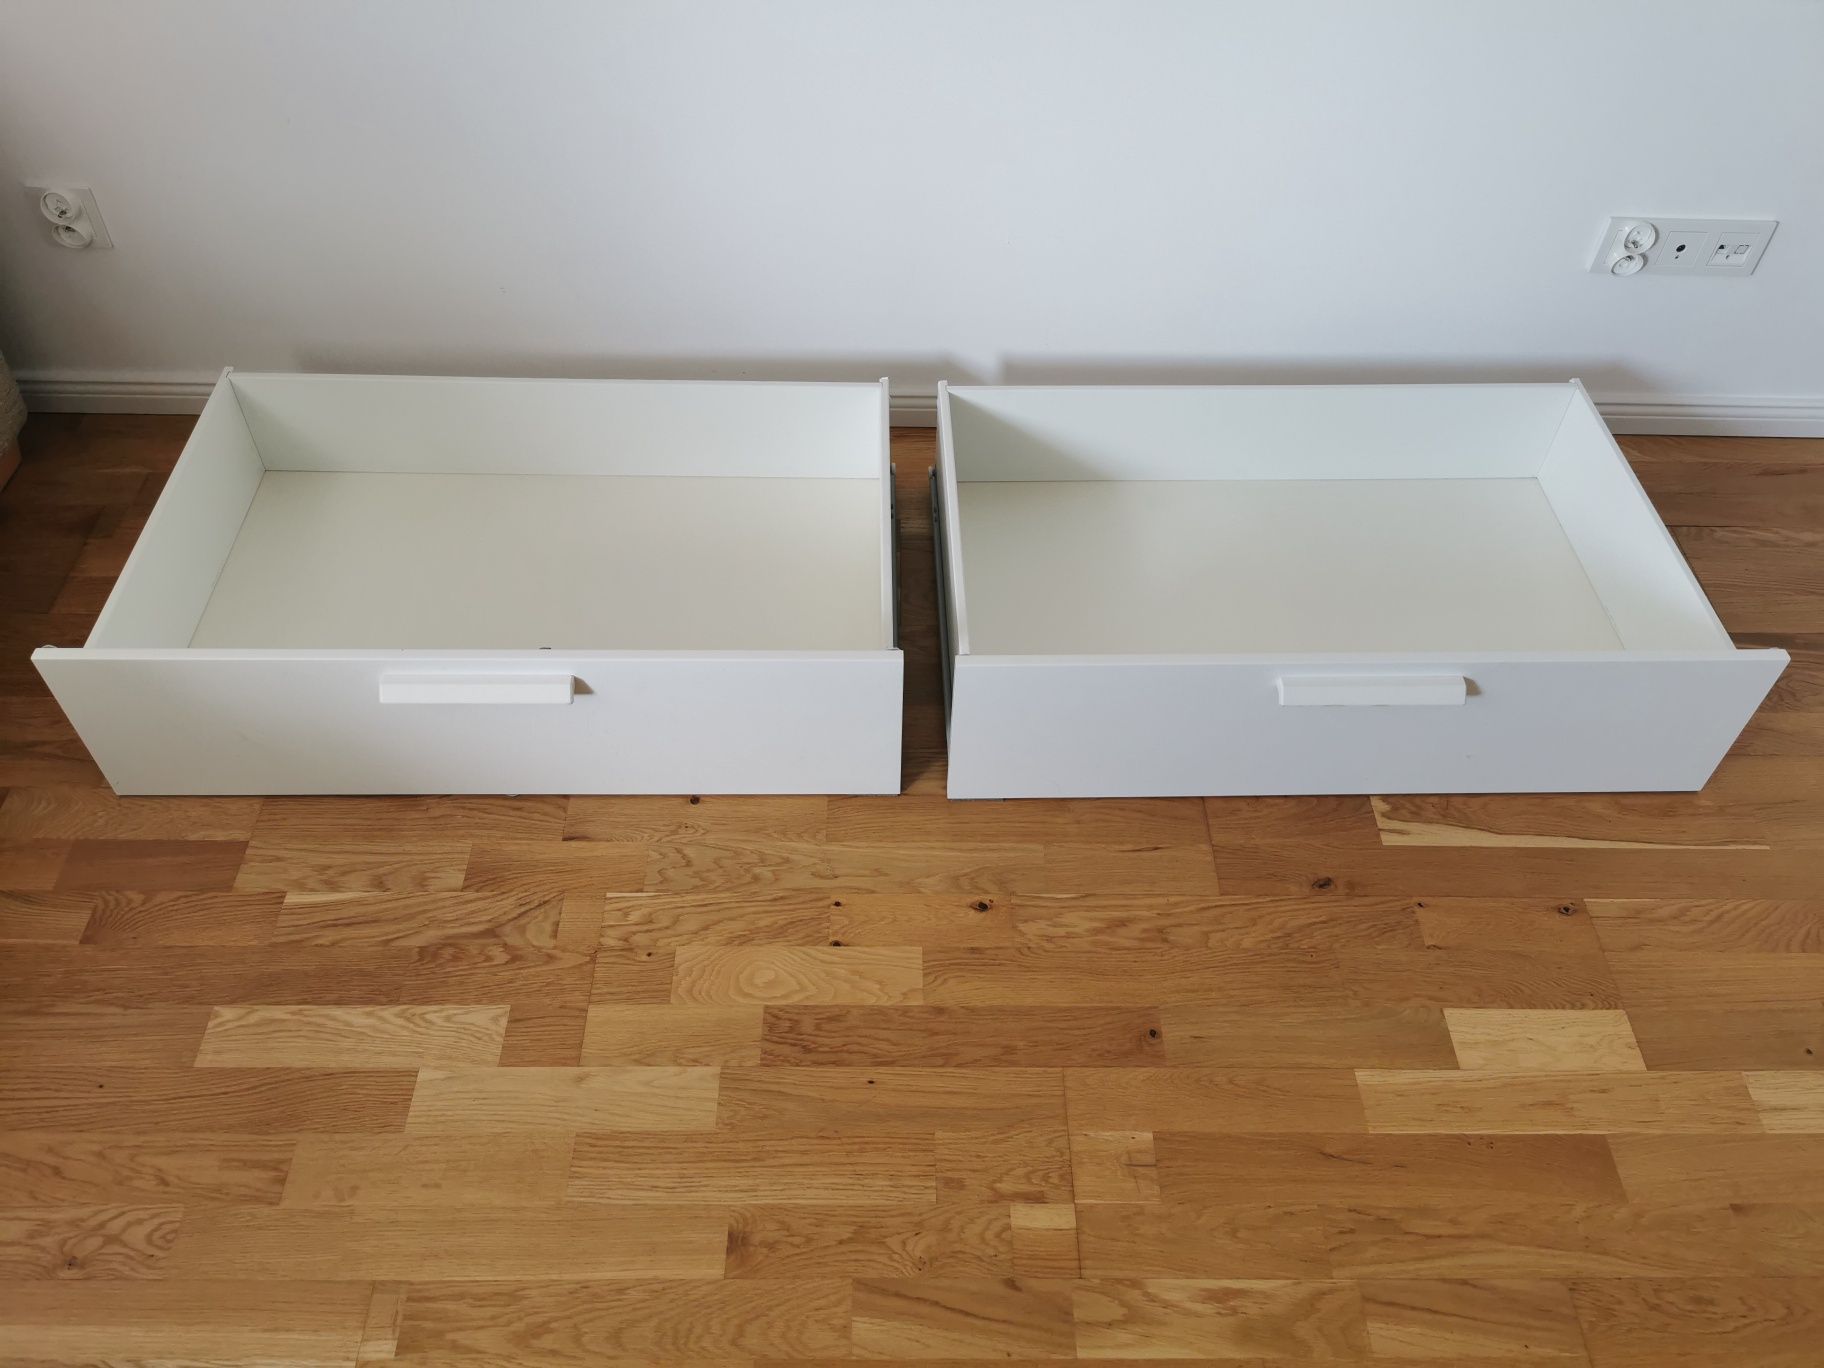 2 szuflady pod łóżko IKEA cena do niewielkiej negocjacjj